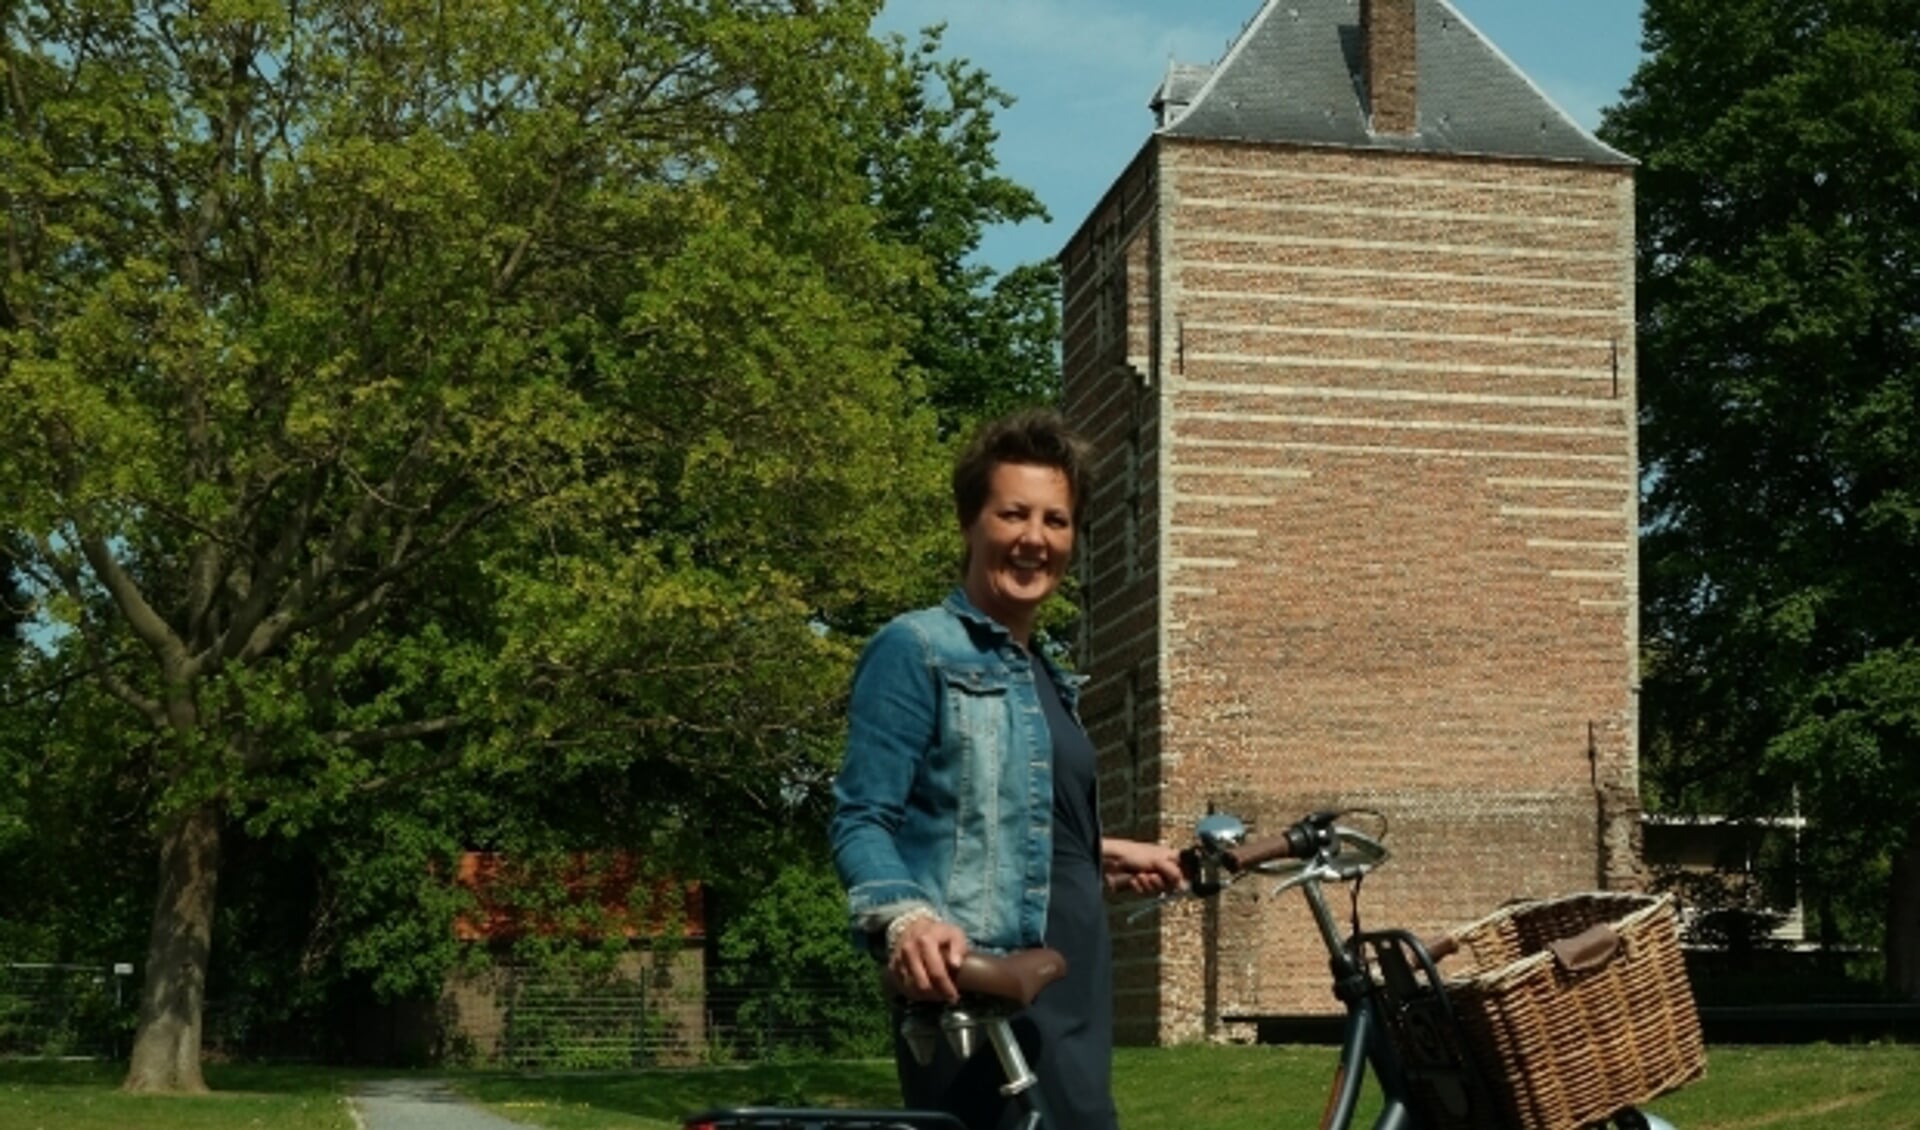 Manon Blom van Bike Tours IJsselstein bij de Kasteeltoren. ''Er is genoeg te zien en te vertellen.'' (Ingezonden foto)